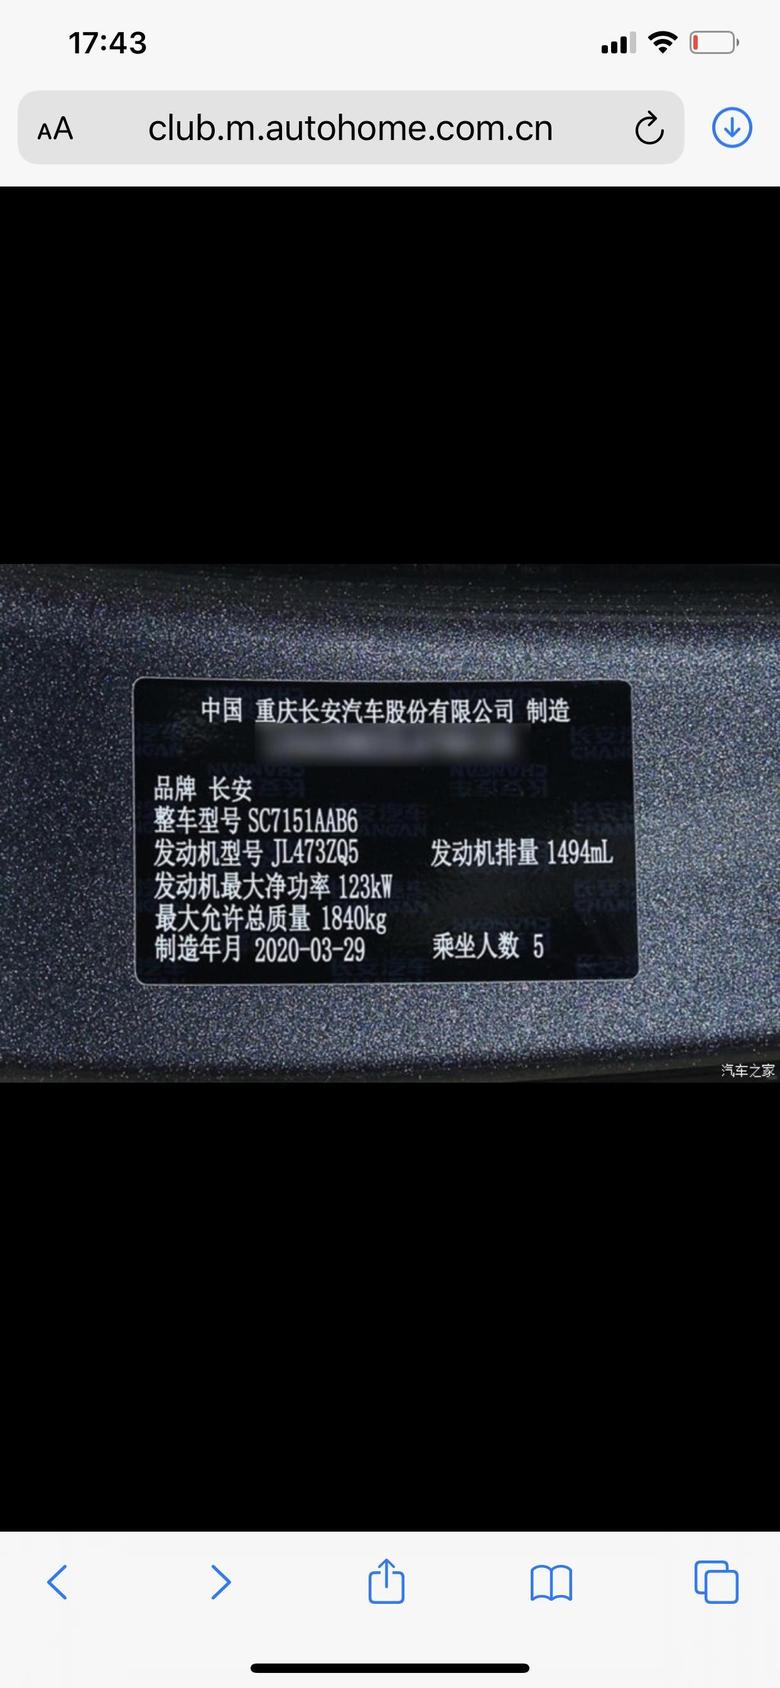 长安欧尚x5 昨天提车看到自己车的铭牌号，发动机净功率是123kw，和发动机功率132kw好像不一样喔